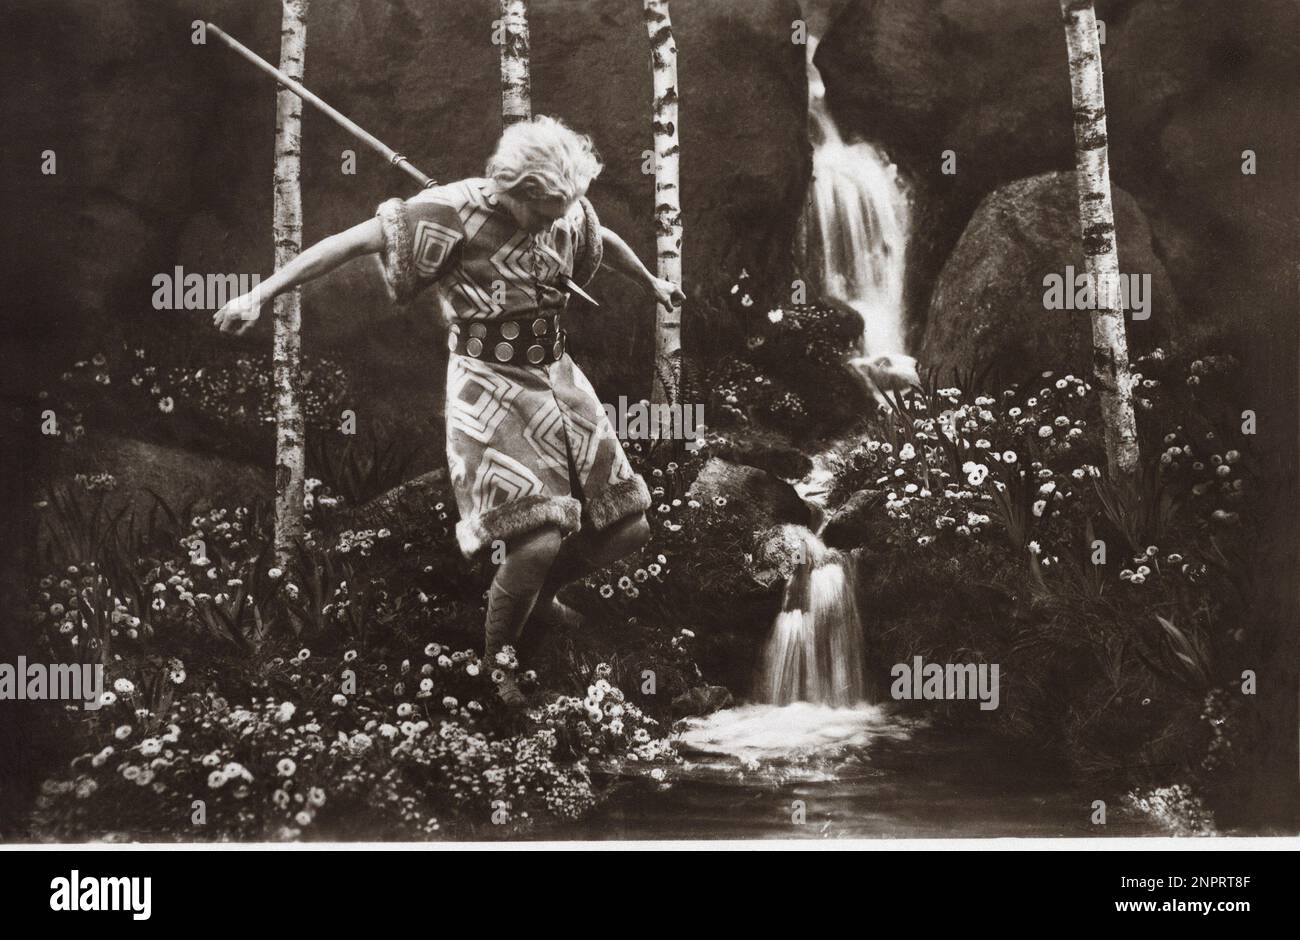 1924 : der Schauspieler PAUL RICHTER als Siegfried im deutschen Stummfilm DIE NIBELUNGEN : SIEGRIED ( I Nibelunghi - Kap. 1 ) von FRITZ LANG , geschrieben von Thea von Harbou - KINO MUTO - FILM - foresta - Wald - UFA ---- Archivio GBB Stockfoto